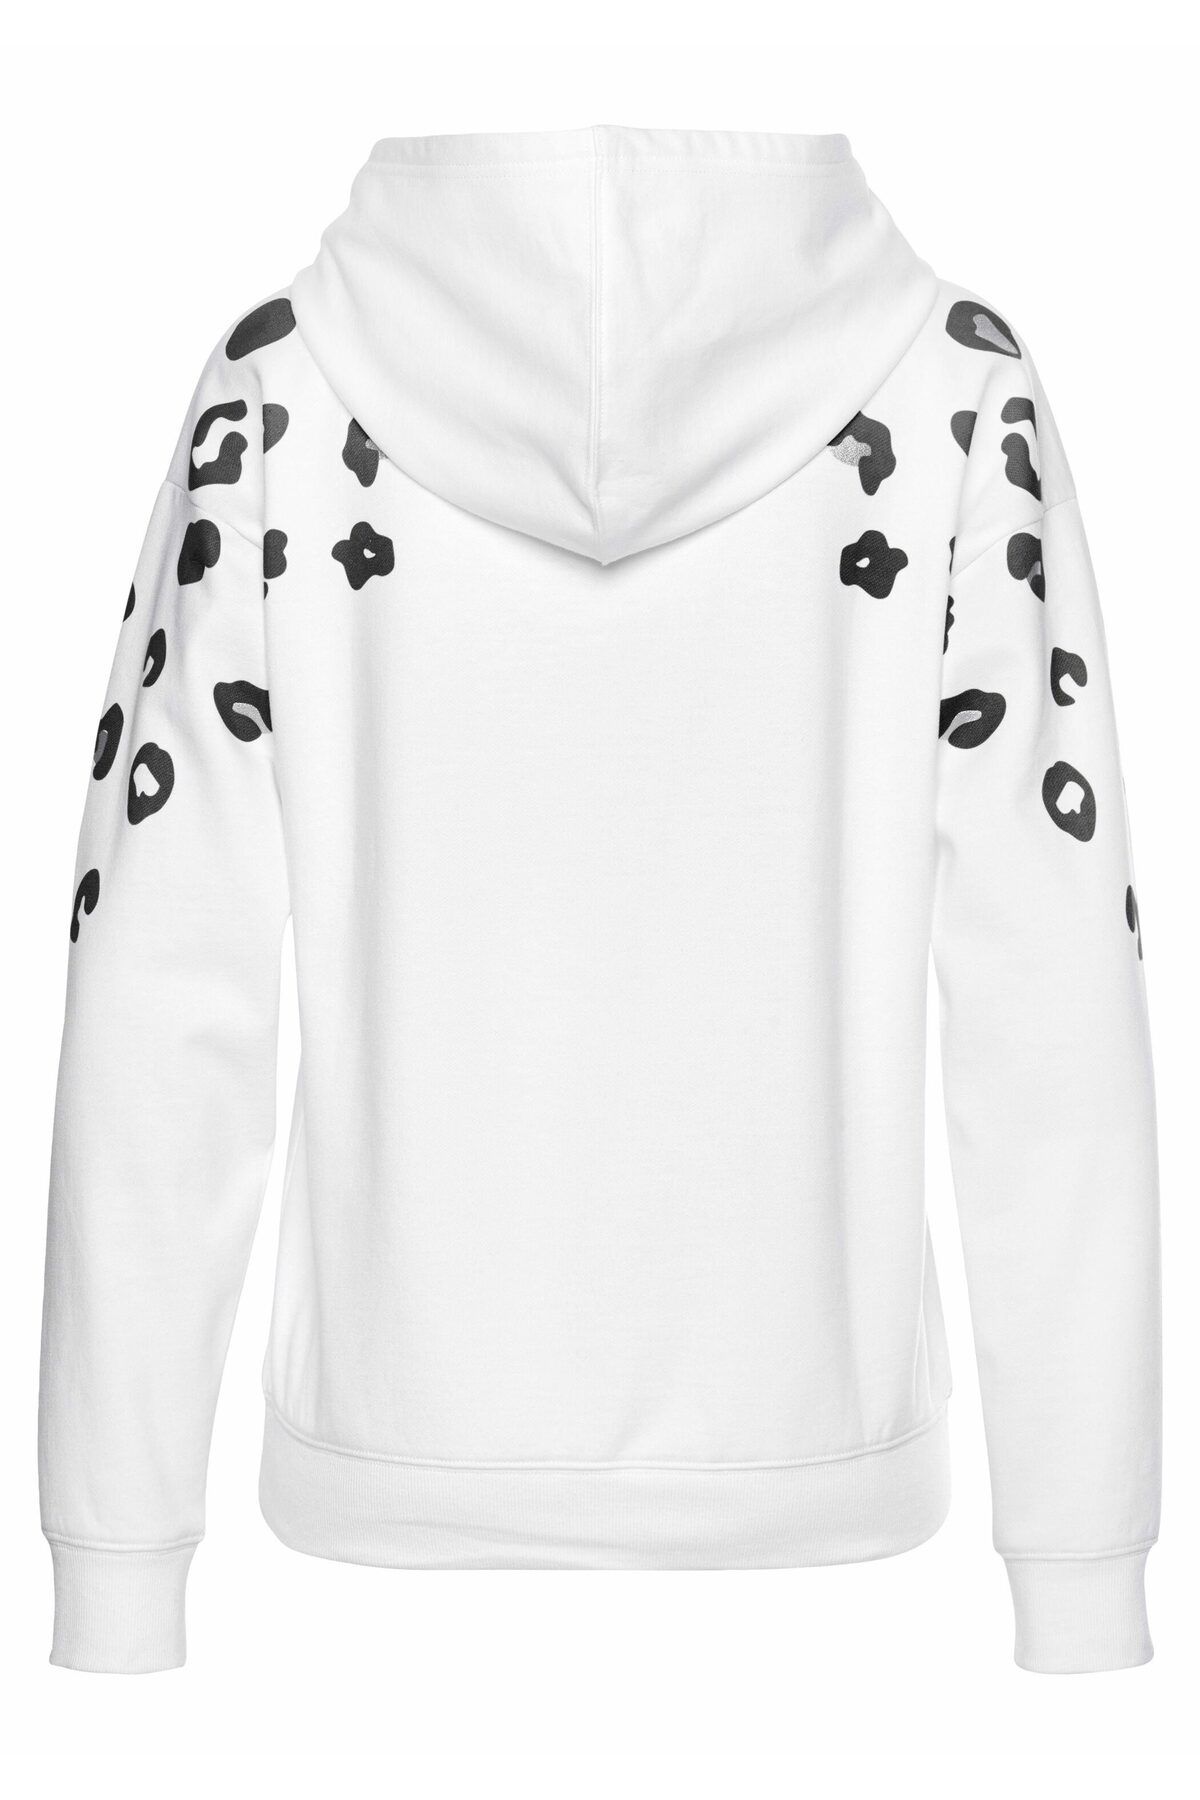 BENCH Sweatshirt Weiß - Regular - Trendyol - Fit